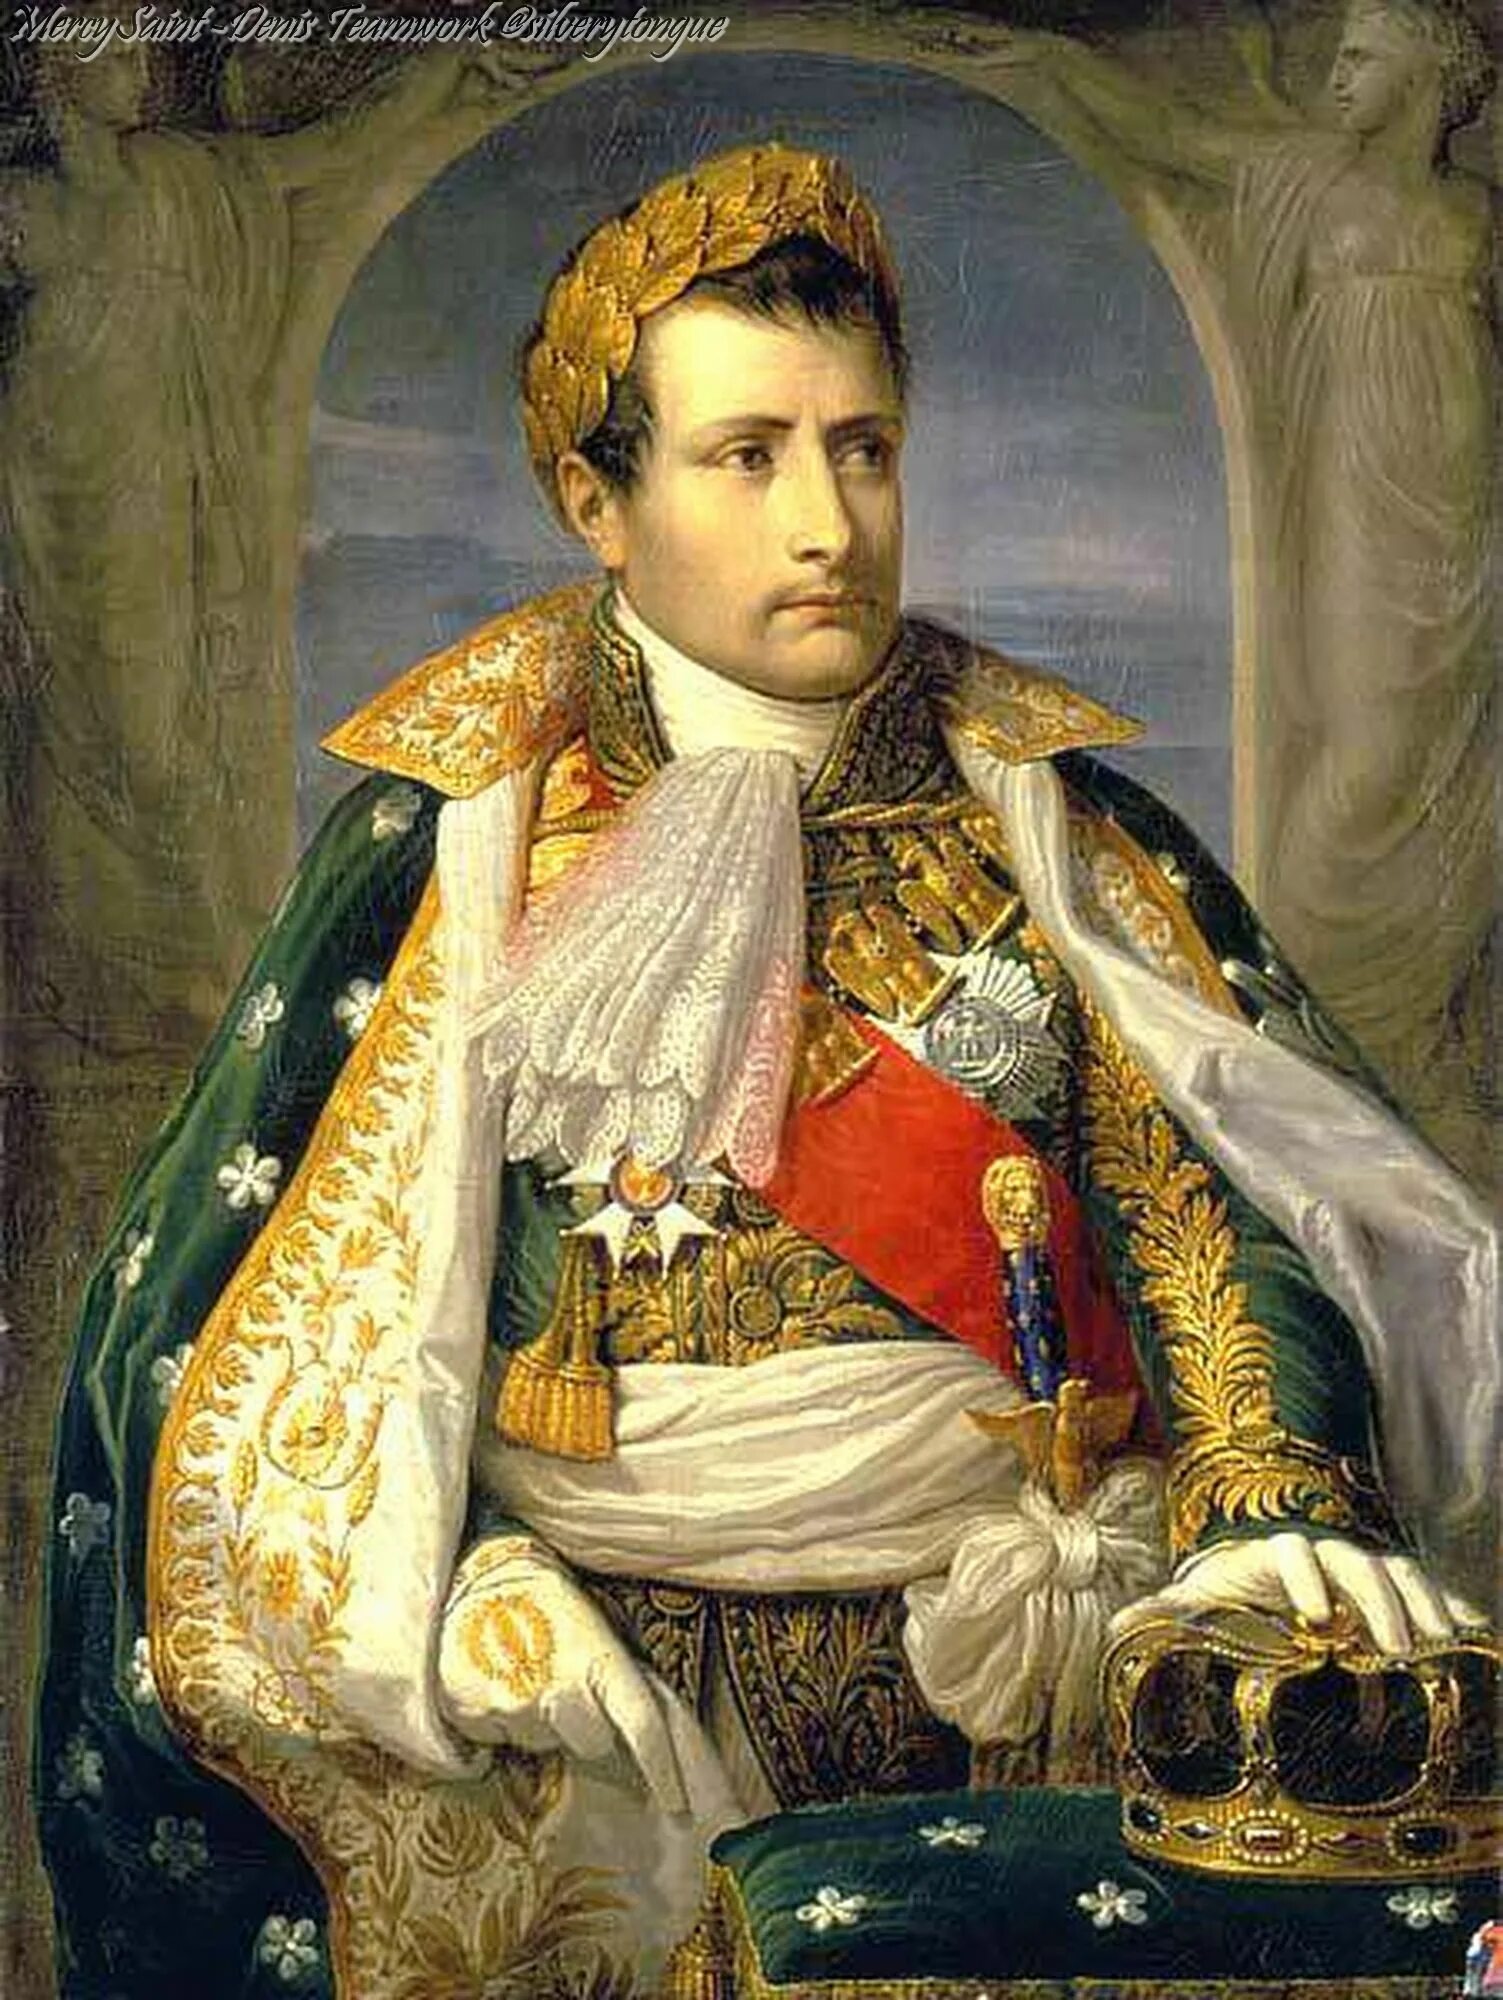 Benda napoleon. Андреа Аппиани Наполеон. Андреа Аппиани портрет Наполеона. Наполеон Бонапарт портрет. Бонапарт парадный портрет.